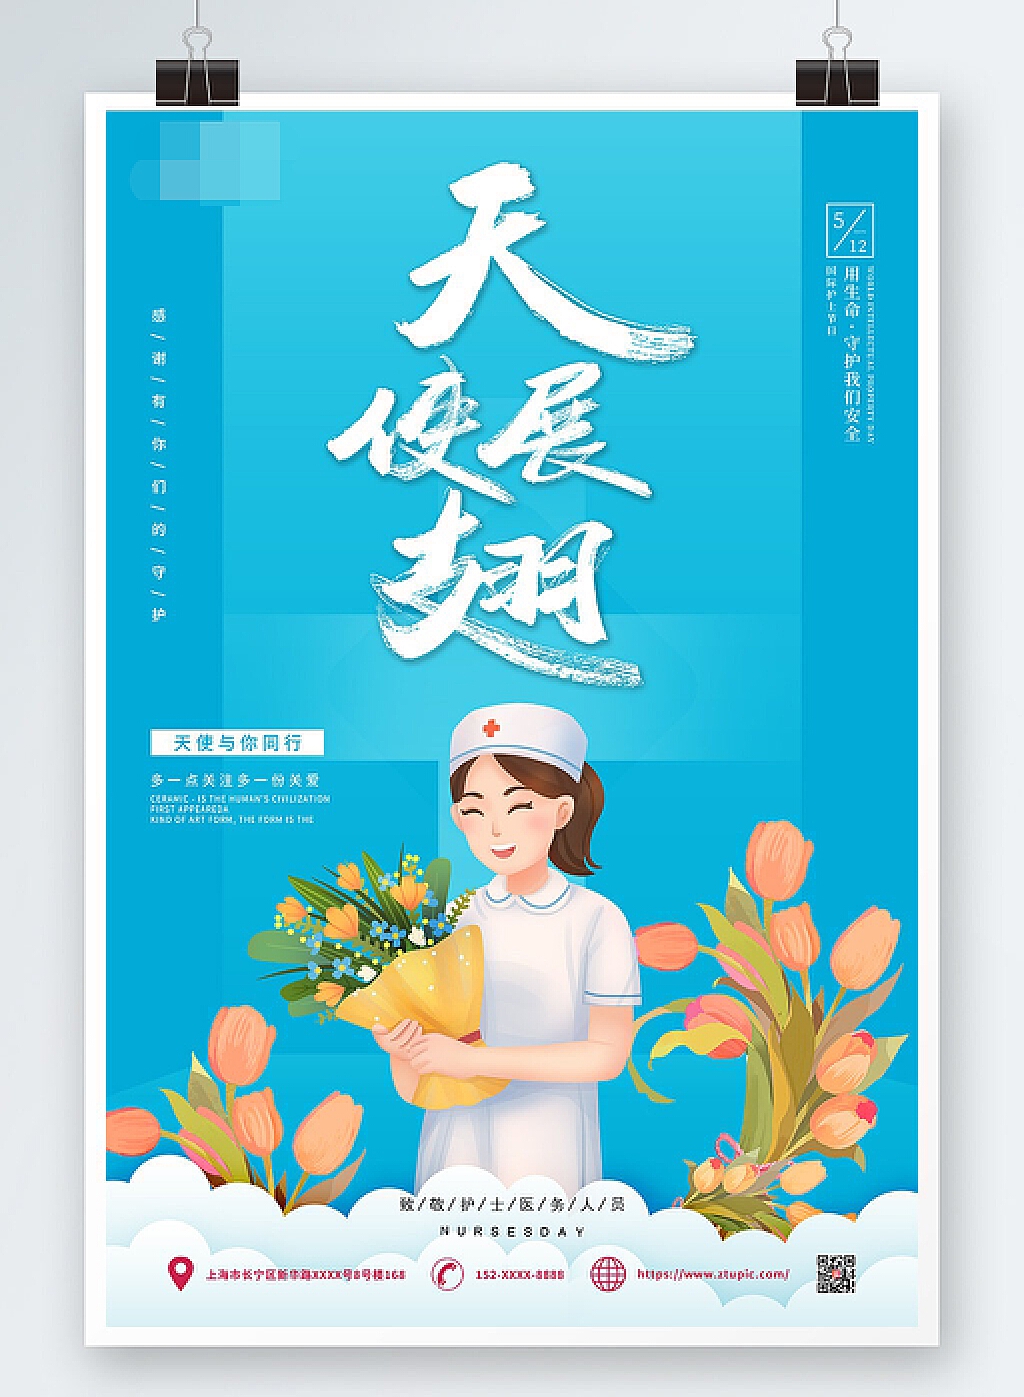 国际护士节节日宣传排版手机海报_图片模板素材-稿定设计